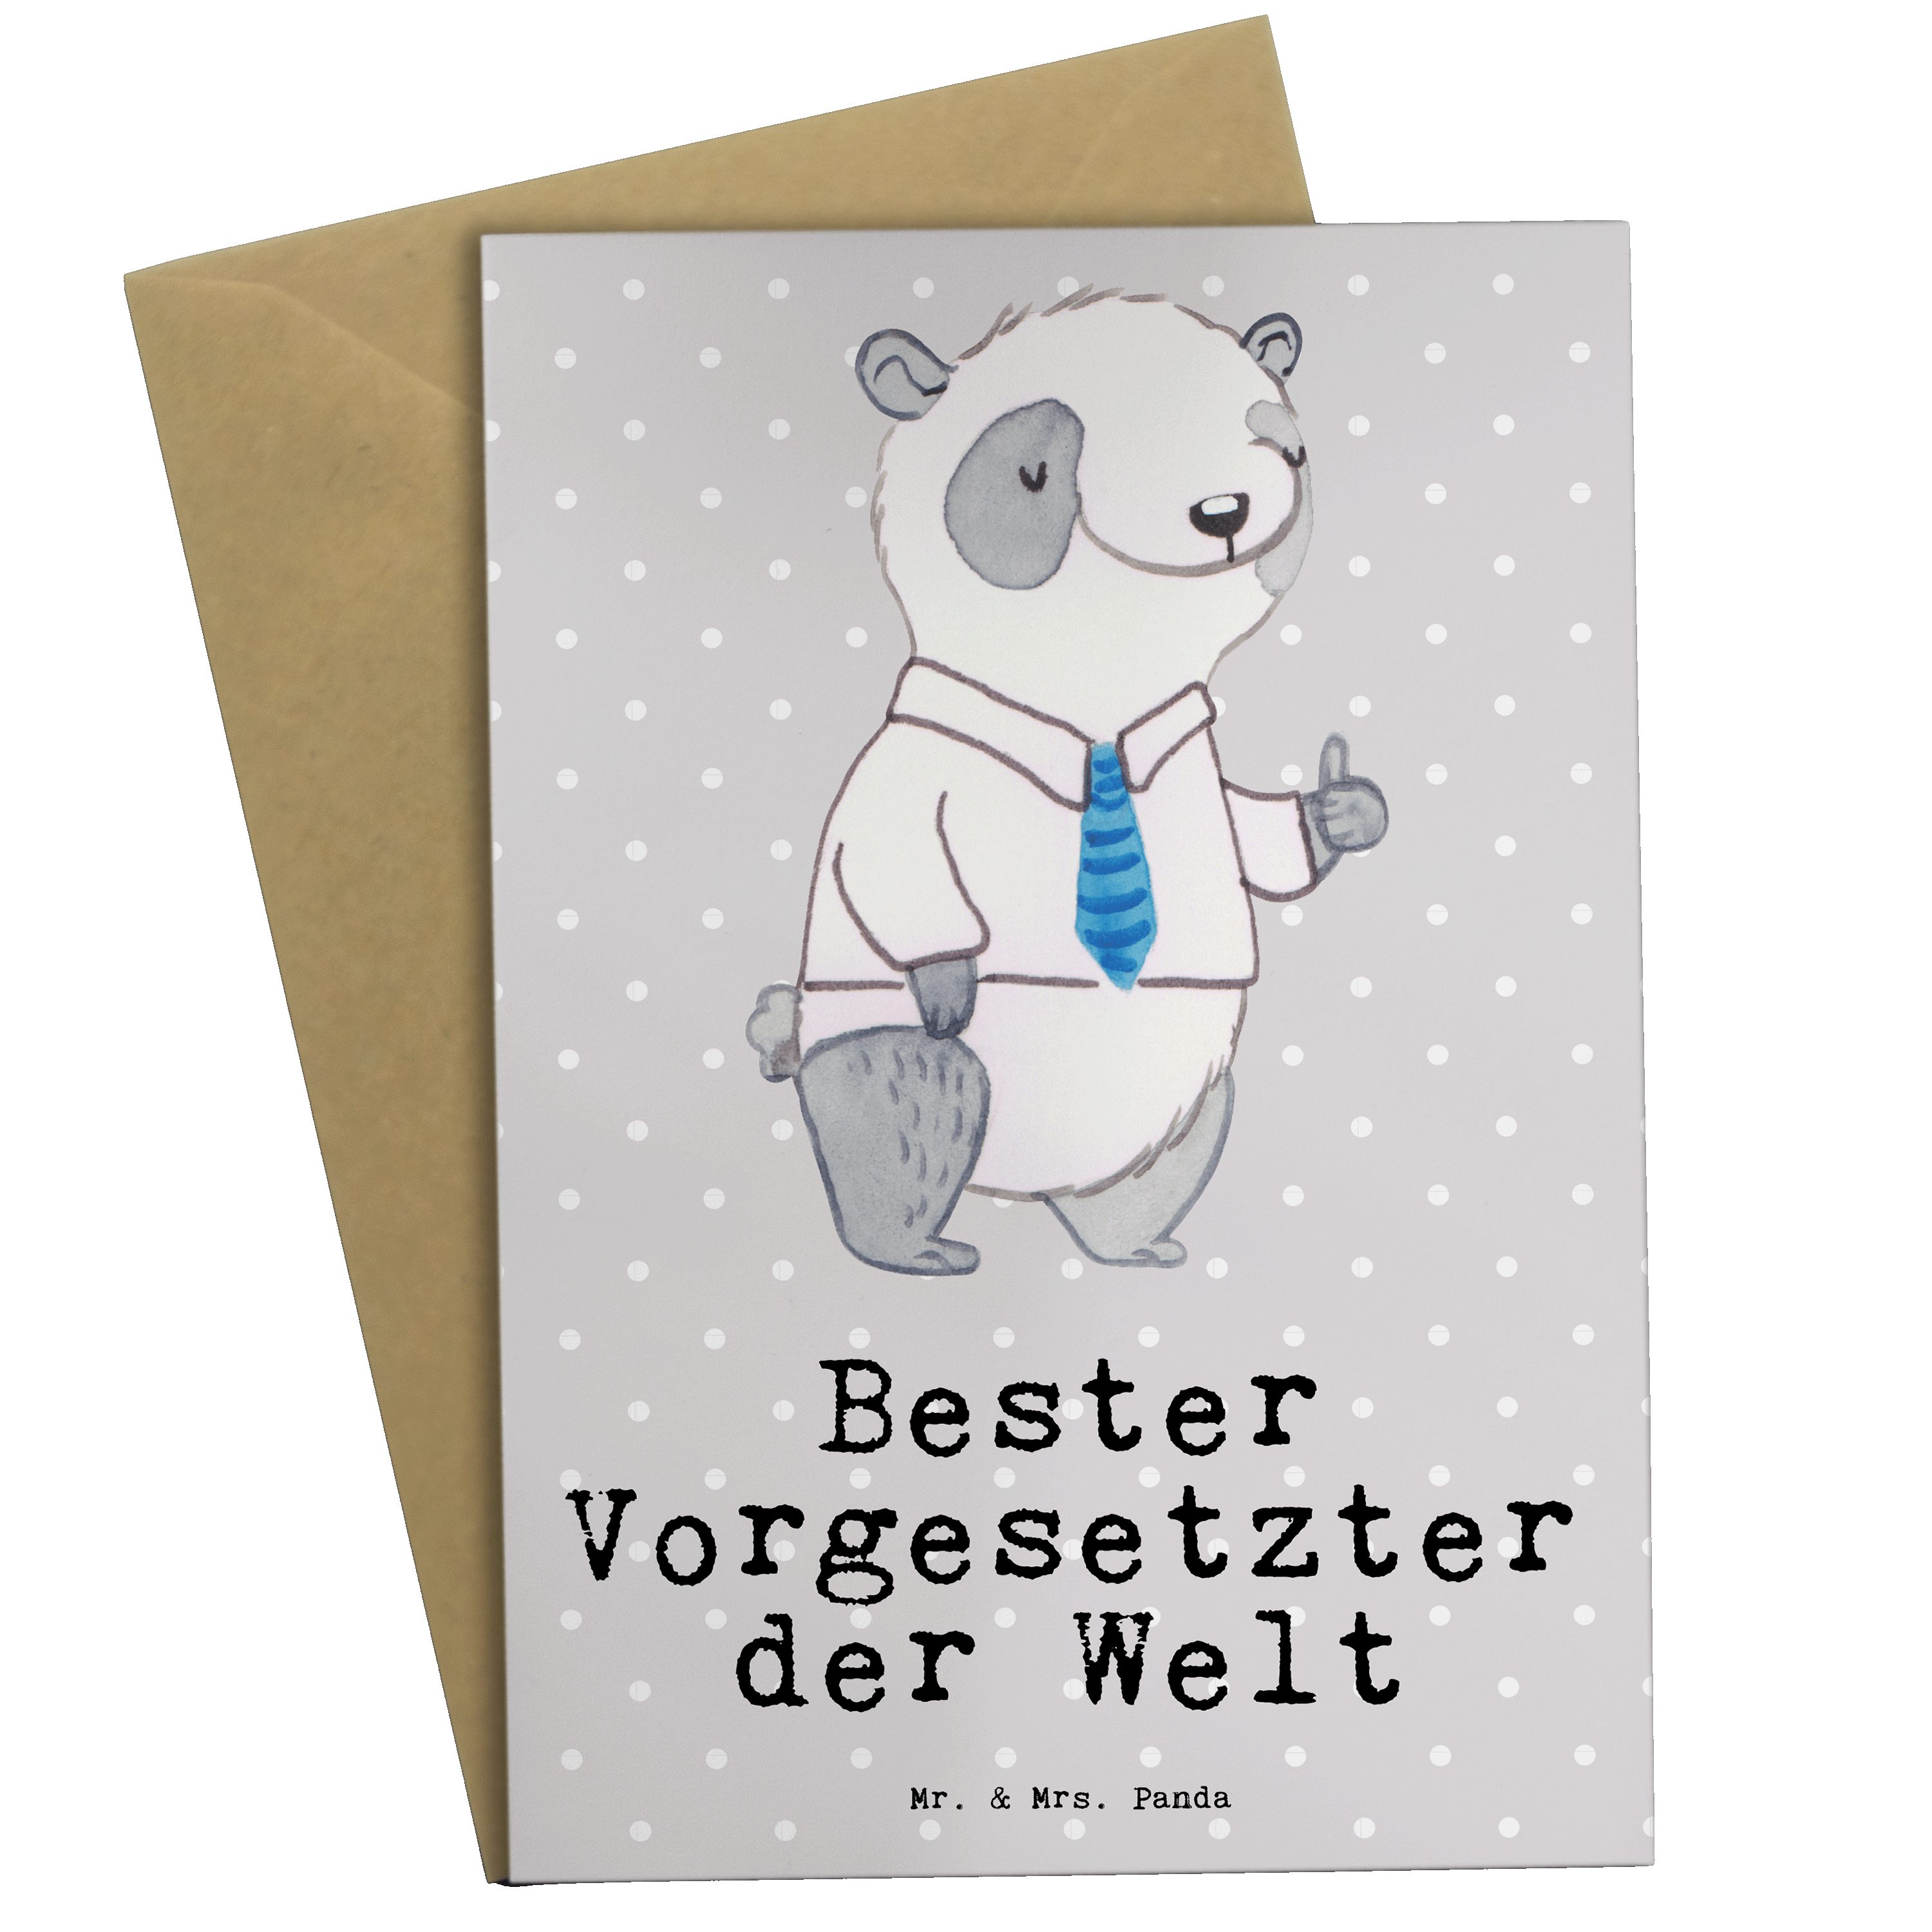 Mr. & Mrs. Panda Grußkarte Panda Bester Vorgesetzter der Welt - Grau Pastell - Geschenk, Arbeit